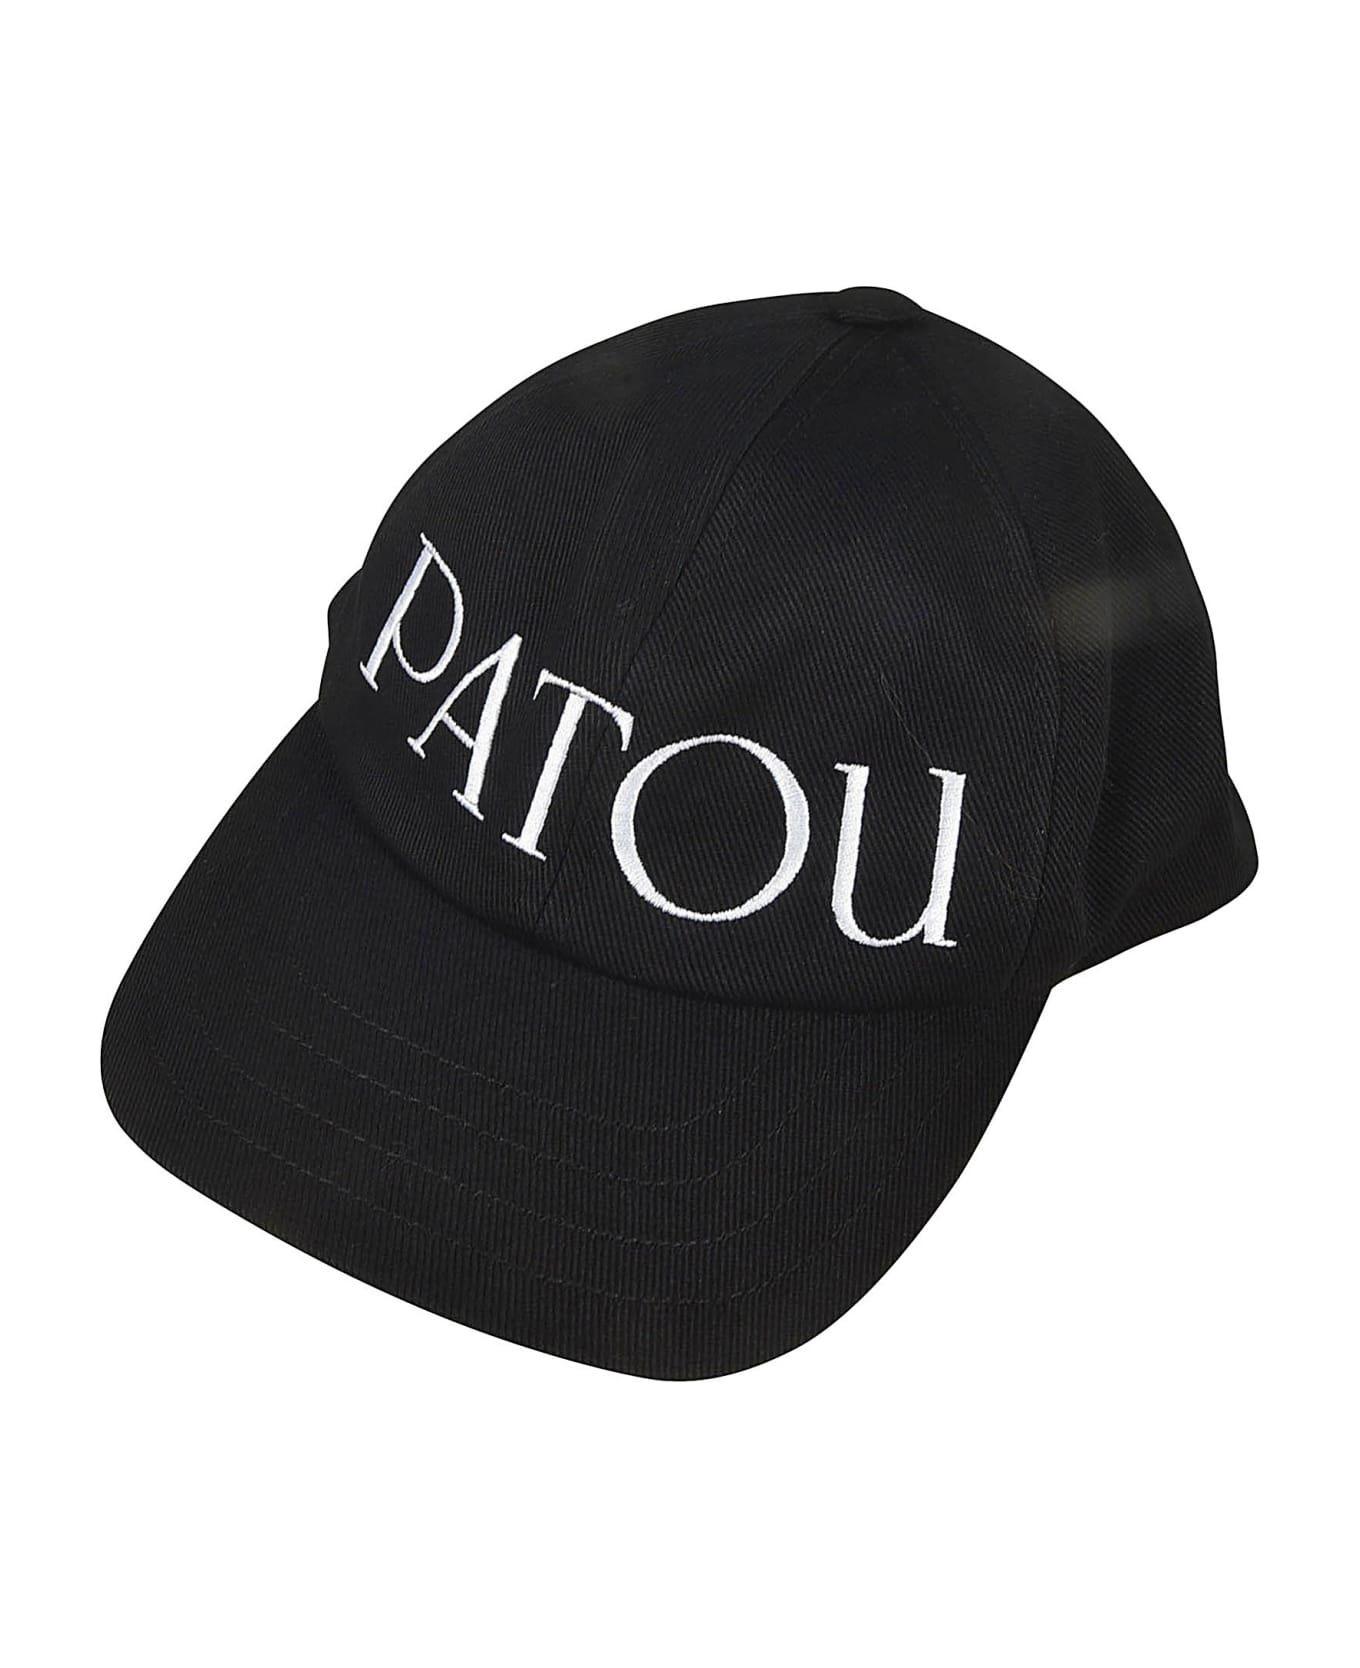 Patou Logo Baseball Cap - Black 帽子